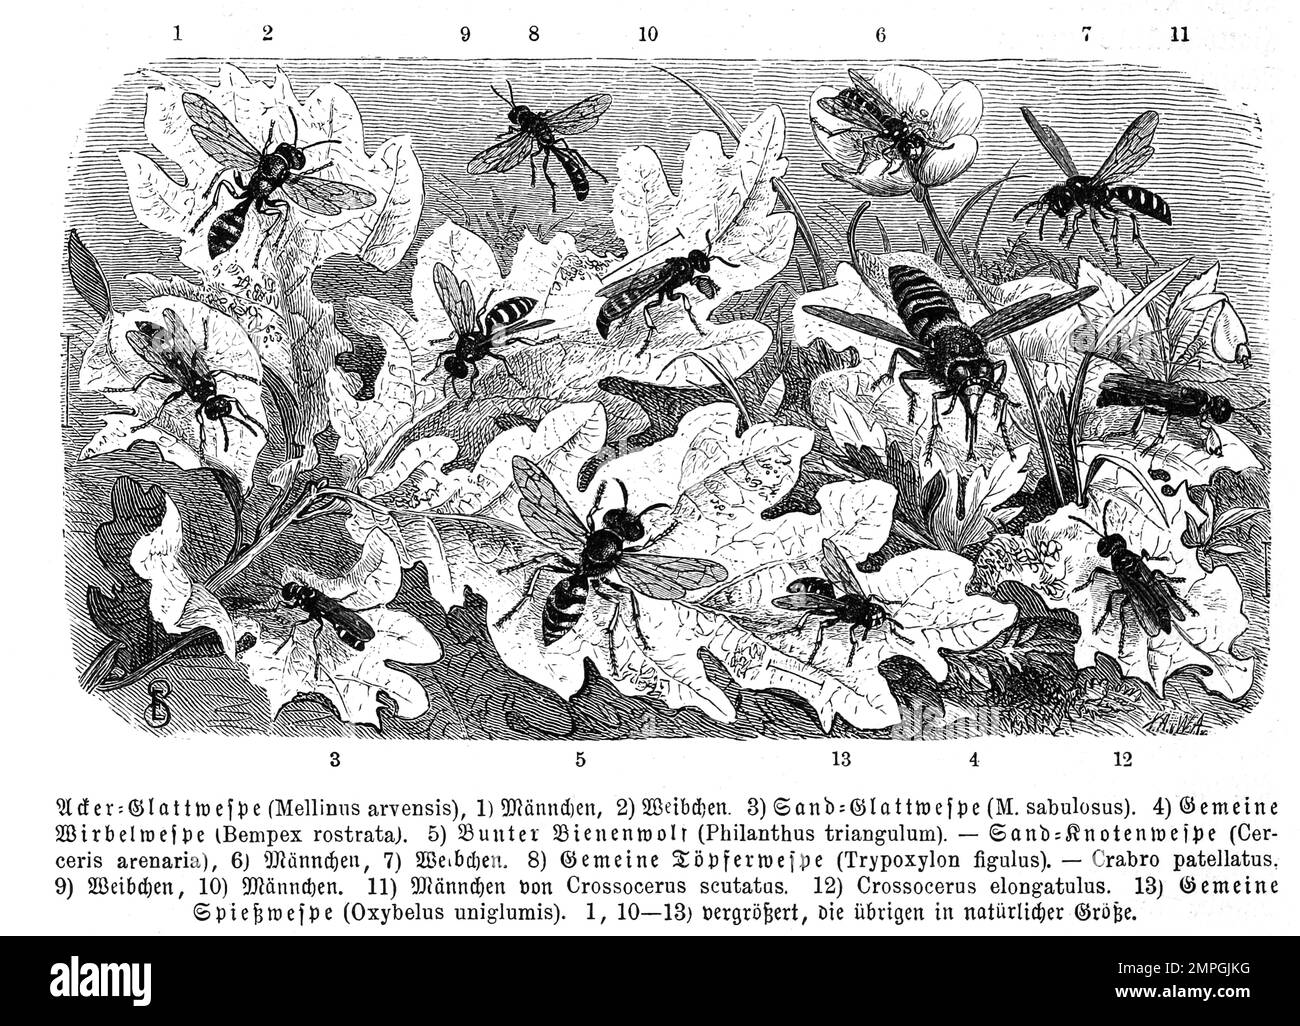 Insekten, 1. Acker-Glattwespe, Mellinus arvensis, 3. Sand-Glattwespe, Mellinus sabulosus, 4. gemeine Wirbelwespe, Bempex rostrate, 5. Bunter Bienenwolf, Philanthus triangulum, 8. gemeine Töpferwespe, Trypoxylon figulus, 13. gemeine Spießwespe, Oxybelus uniglumis, Historisch, digital restaurierte Reproduktion von einer Vorlage aus dem 19. Jahrhundert Stock Photo